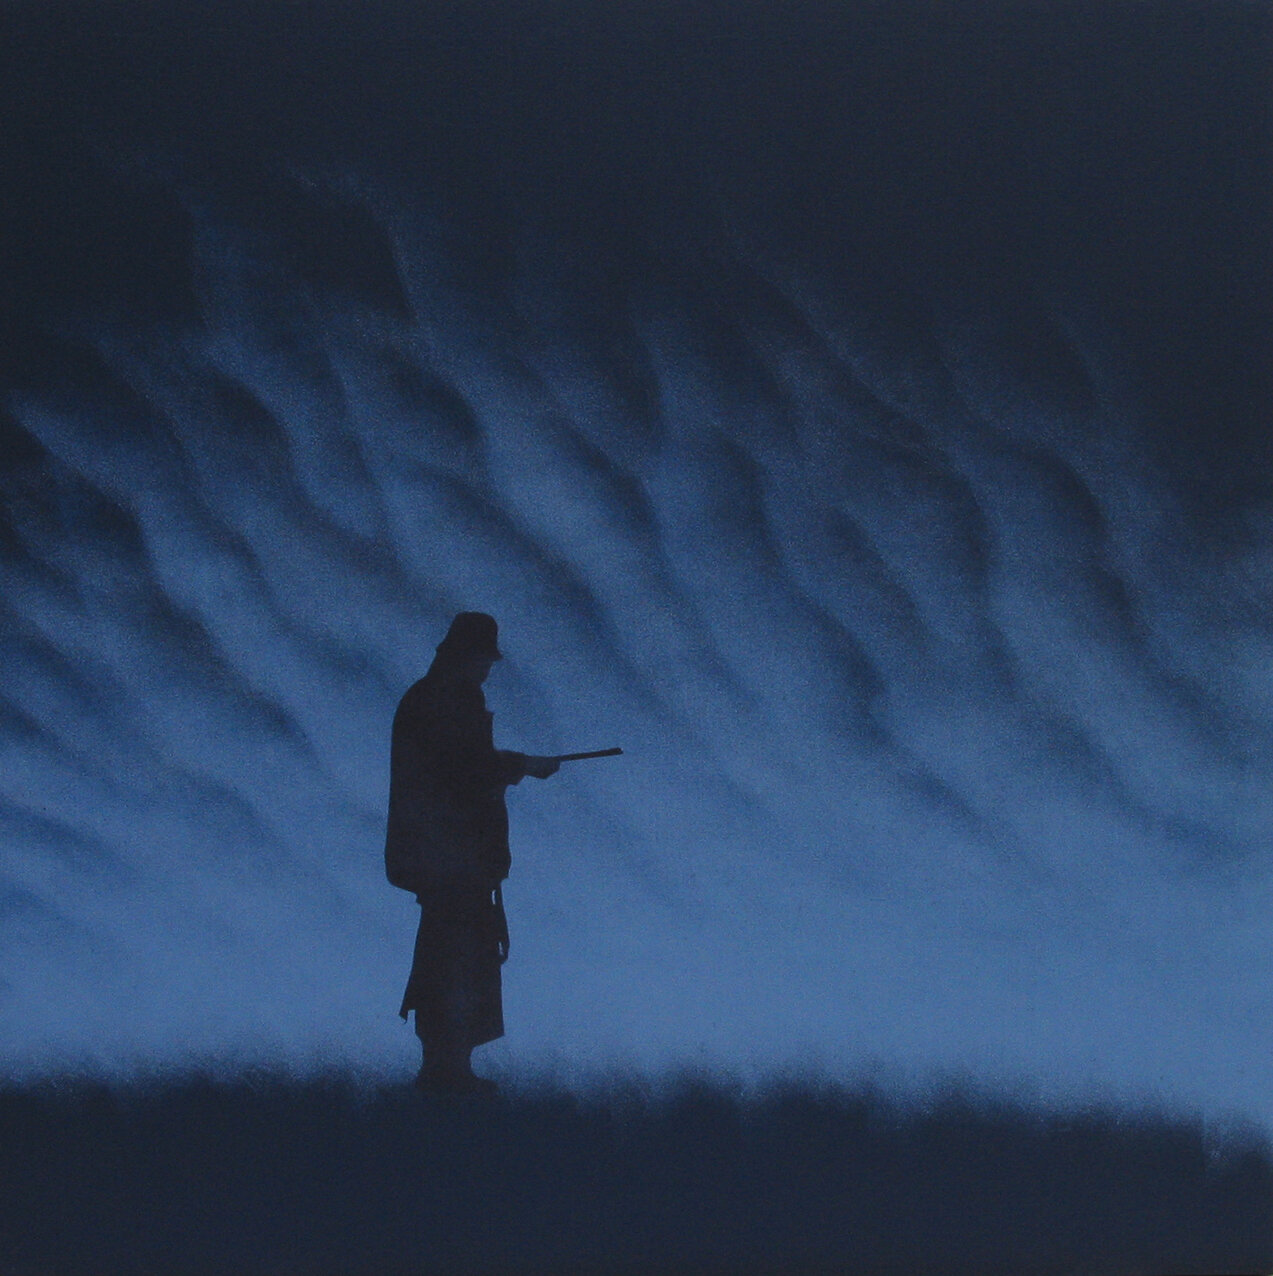  Cazador, 2000, Acrylic on canvas, 35.43 x 35.43 inches / 90 x 90 cm 